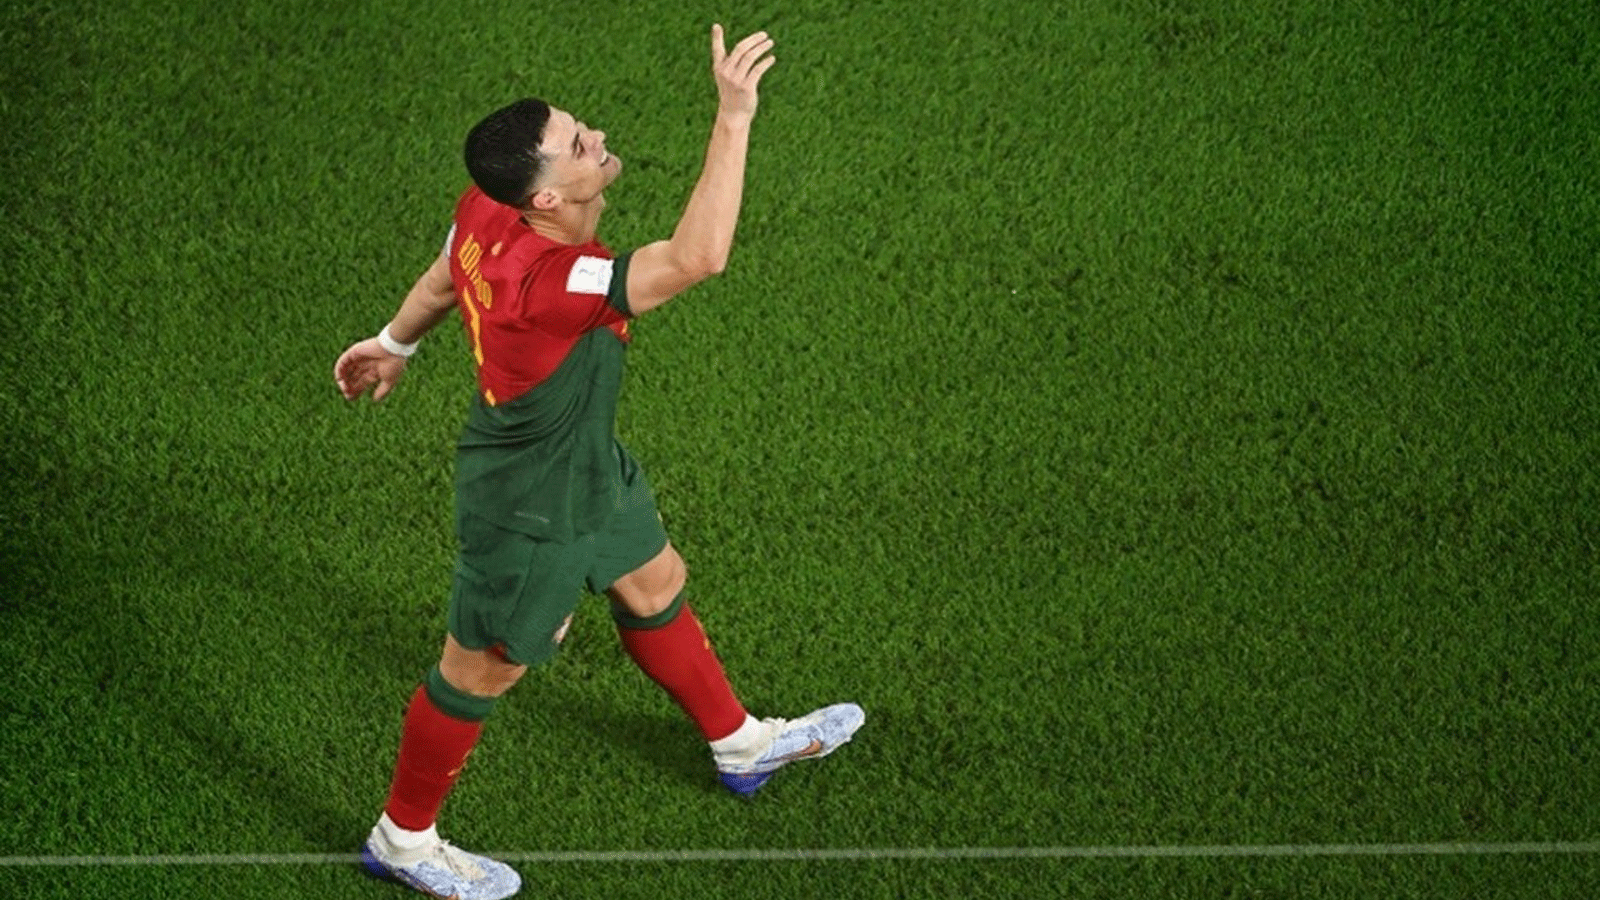  كريستيانو رونالدو يحتفل بتسجيله الهدف في كأس العالم